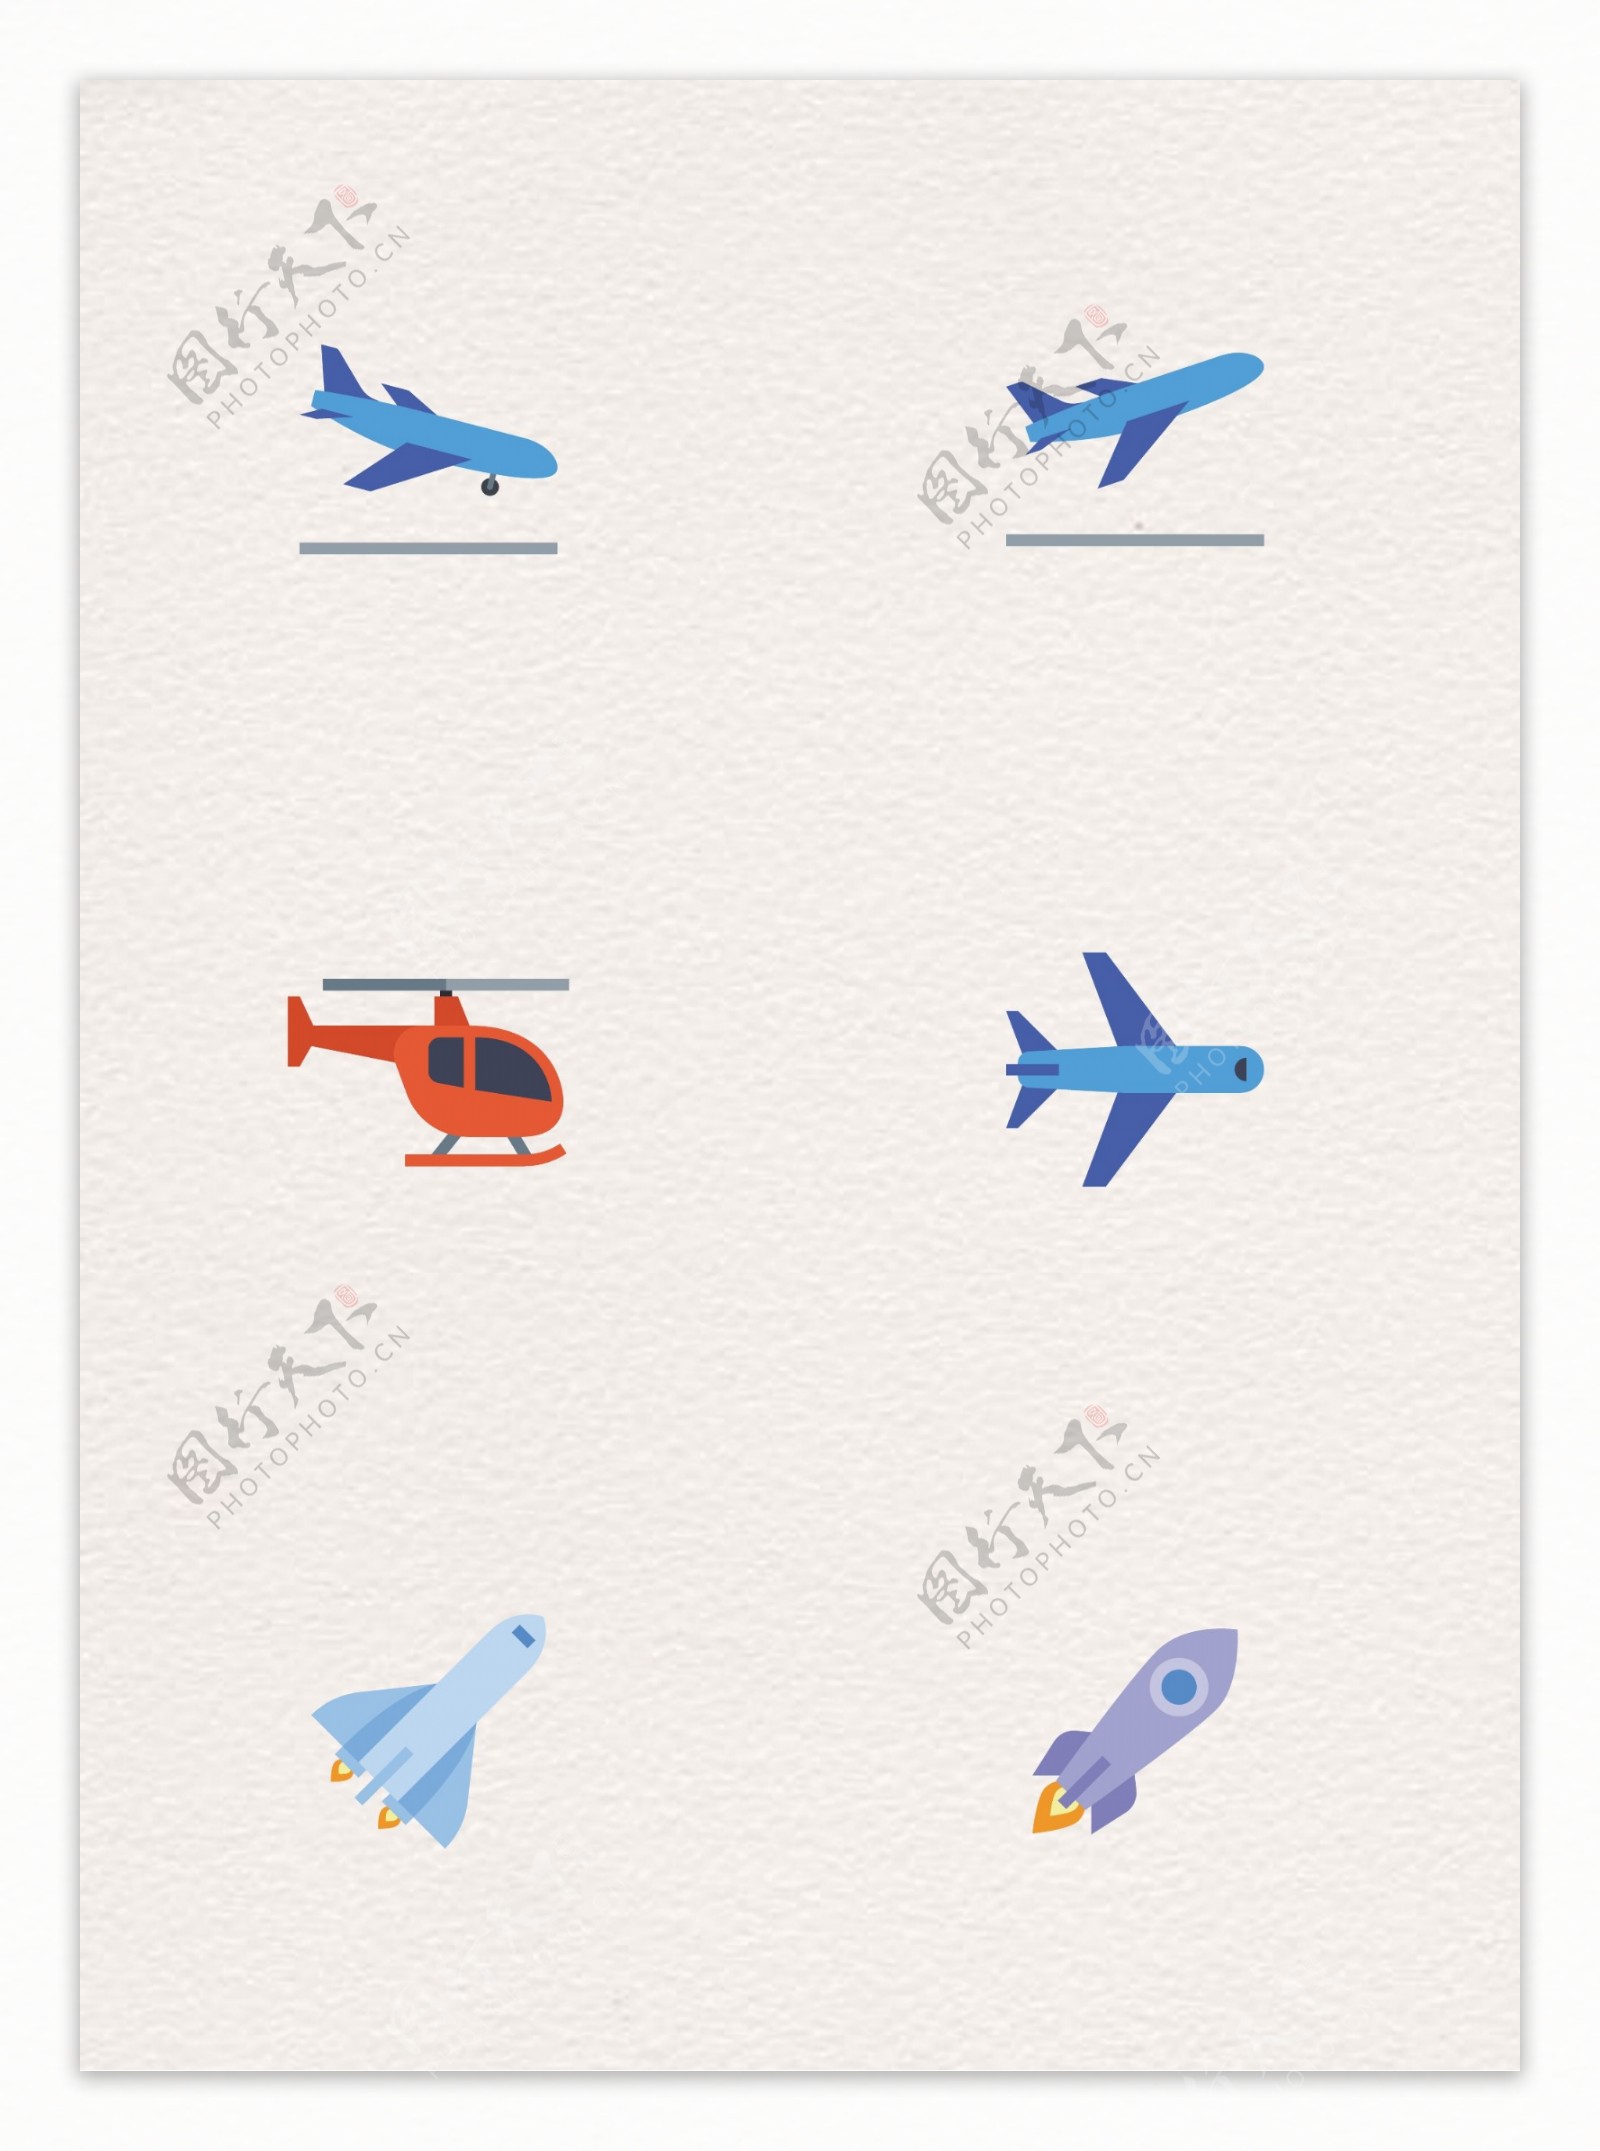 扁平化飞机和火箭矢量图标设计